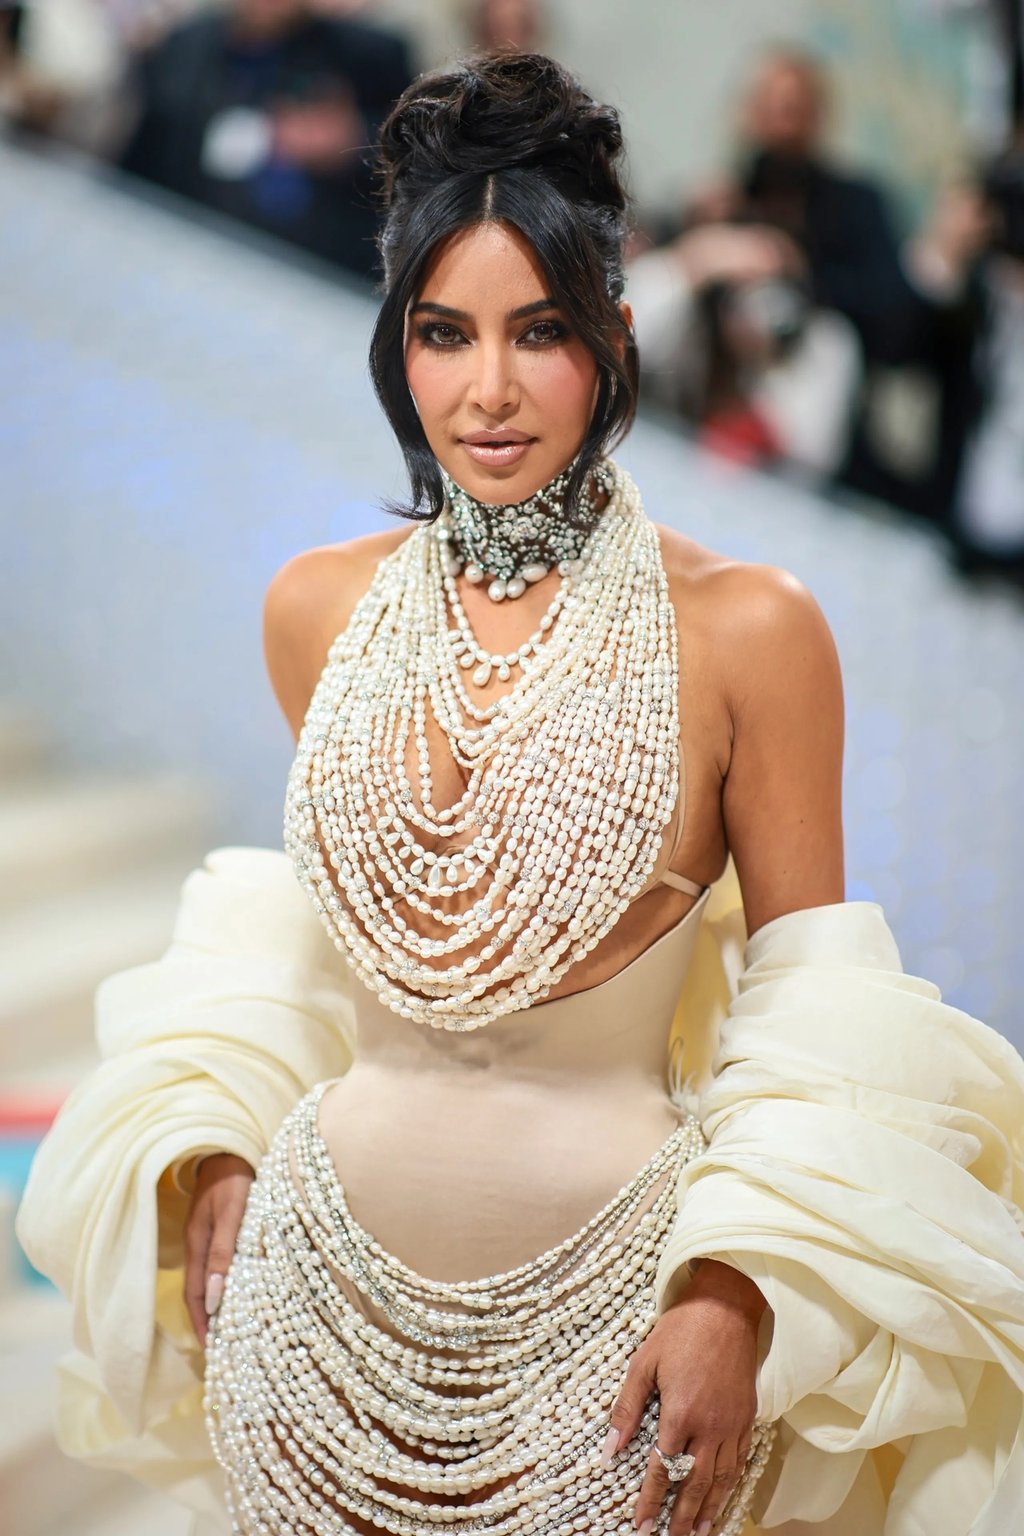 Especial. La socialité y empresaria Kim Kardashian  es una de las mujeres más influyentes de los últimos tiempos.